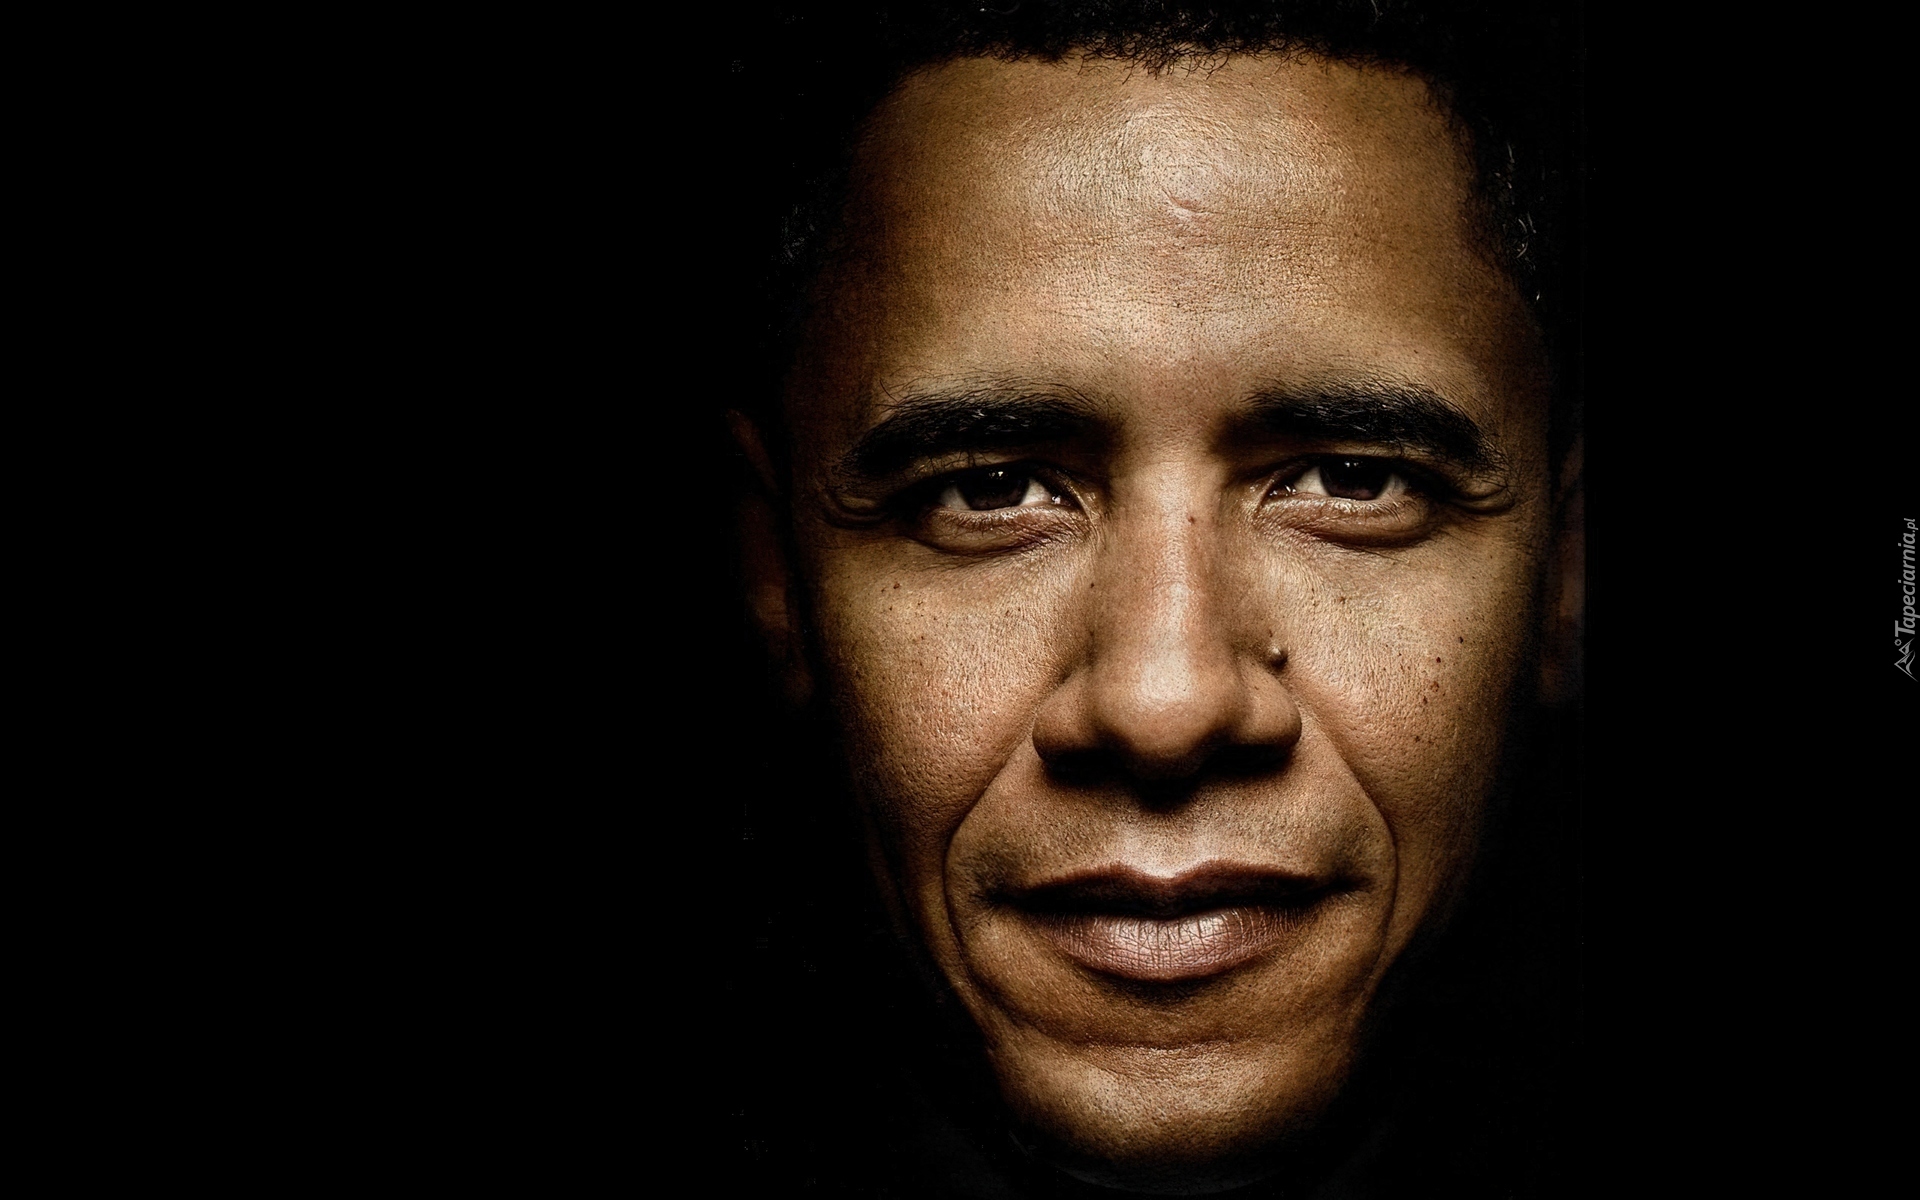 Barack Obama, Prezydent, USA